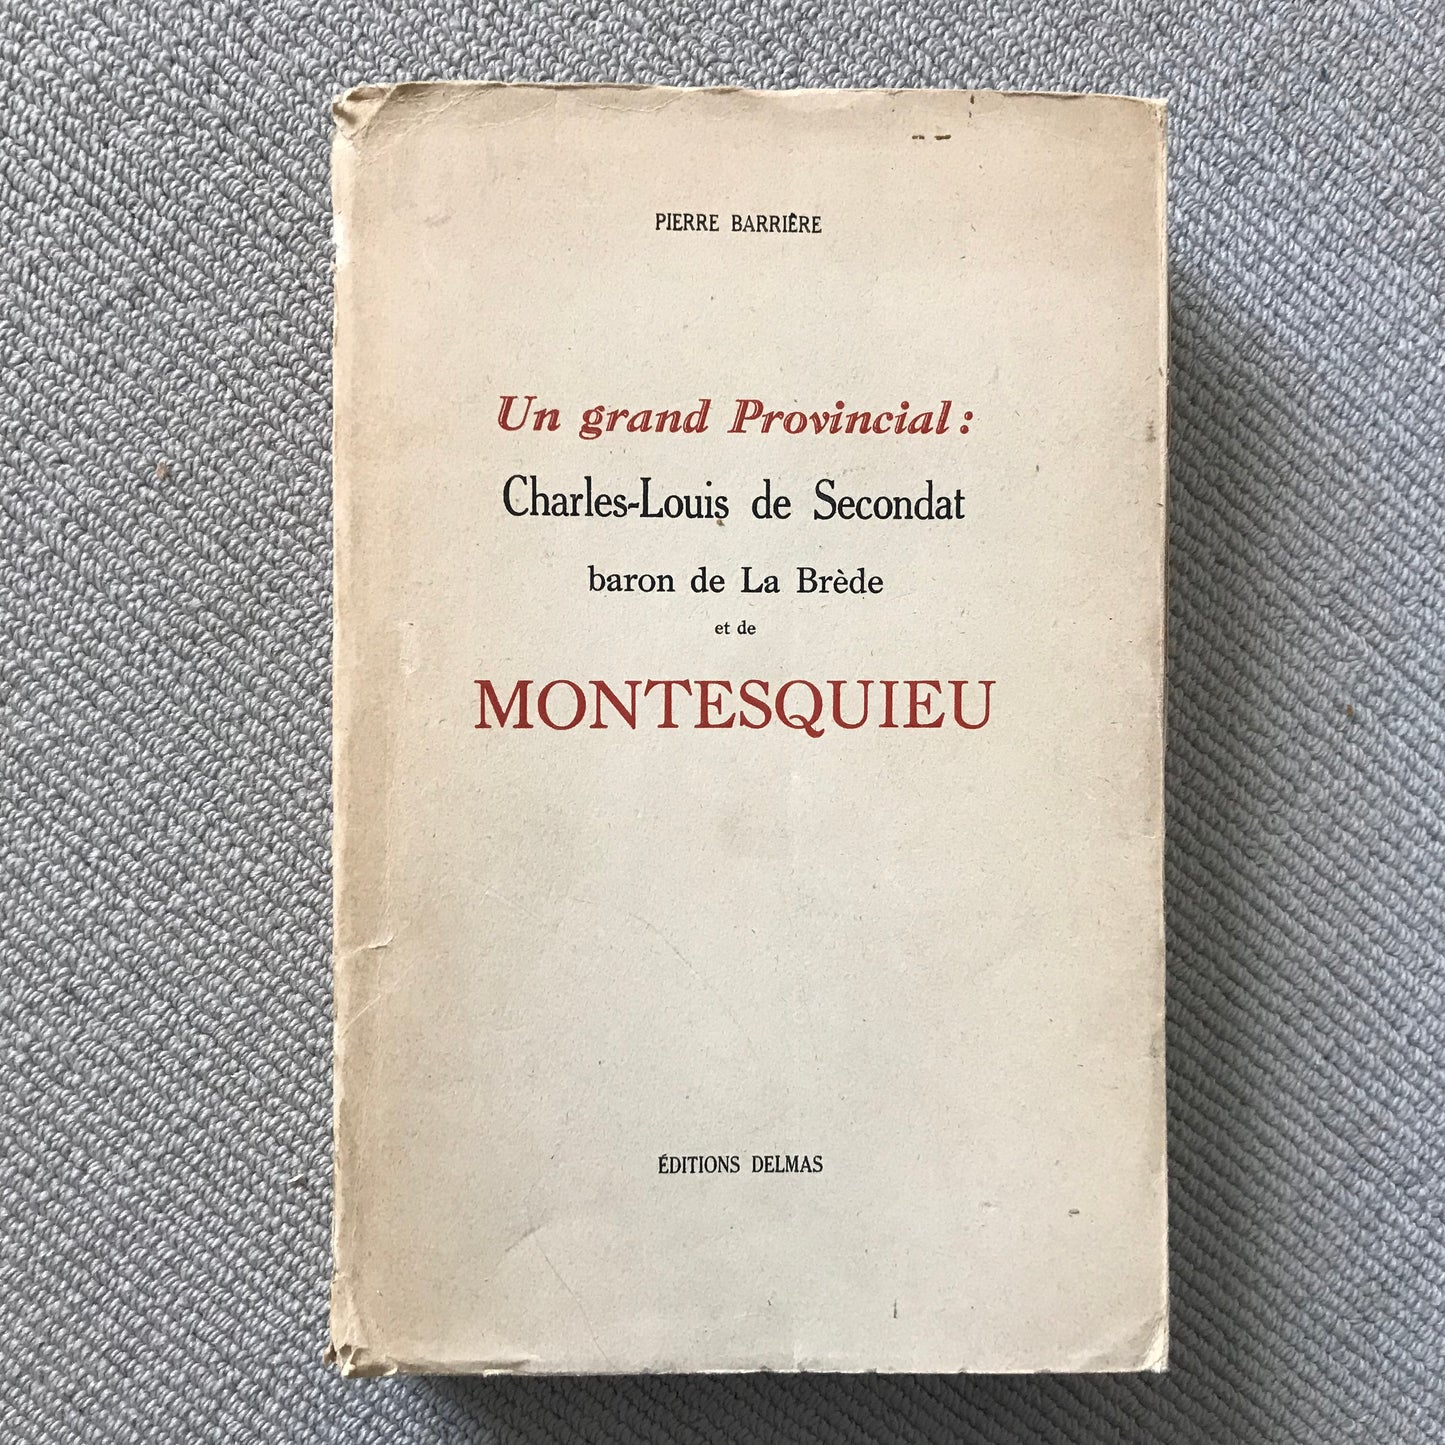 Barrière, Pierre - Un grand Provincial: Montesquieu